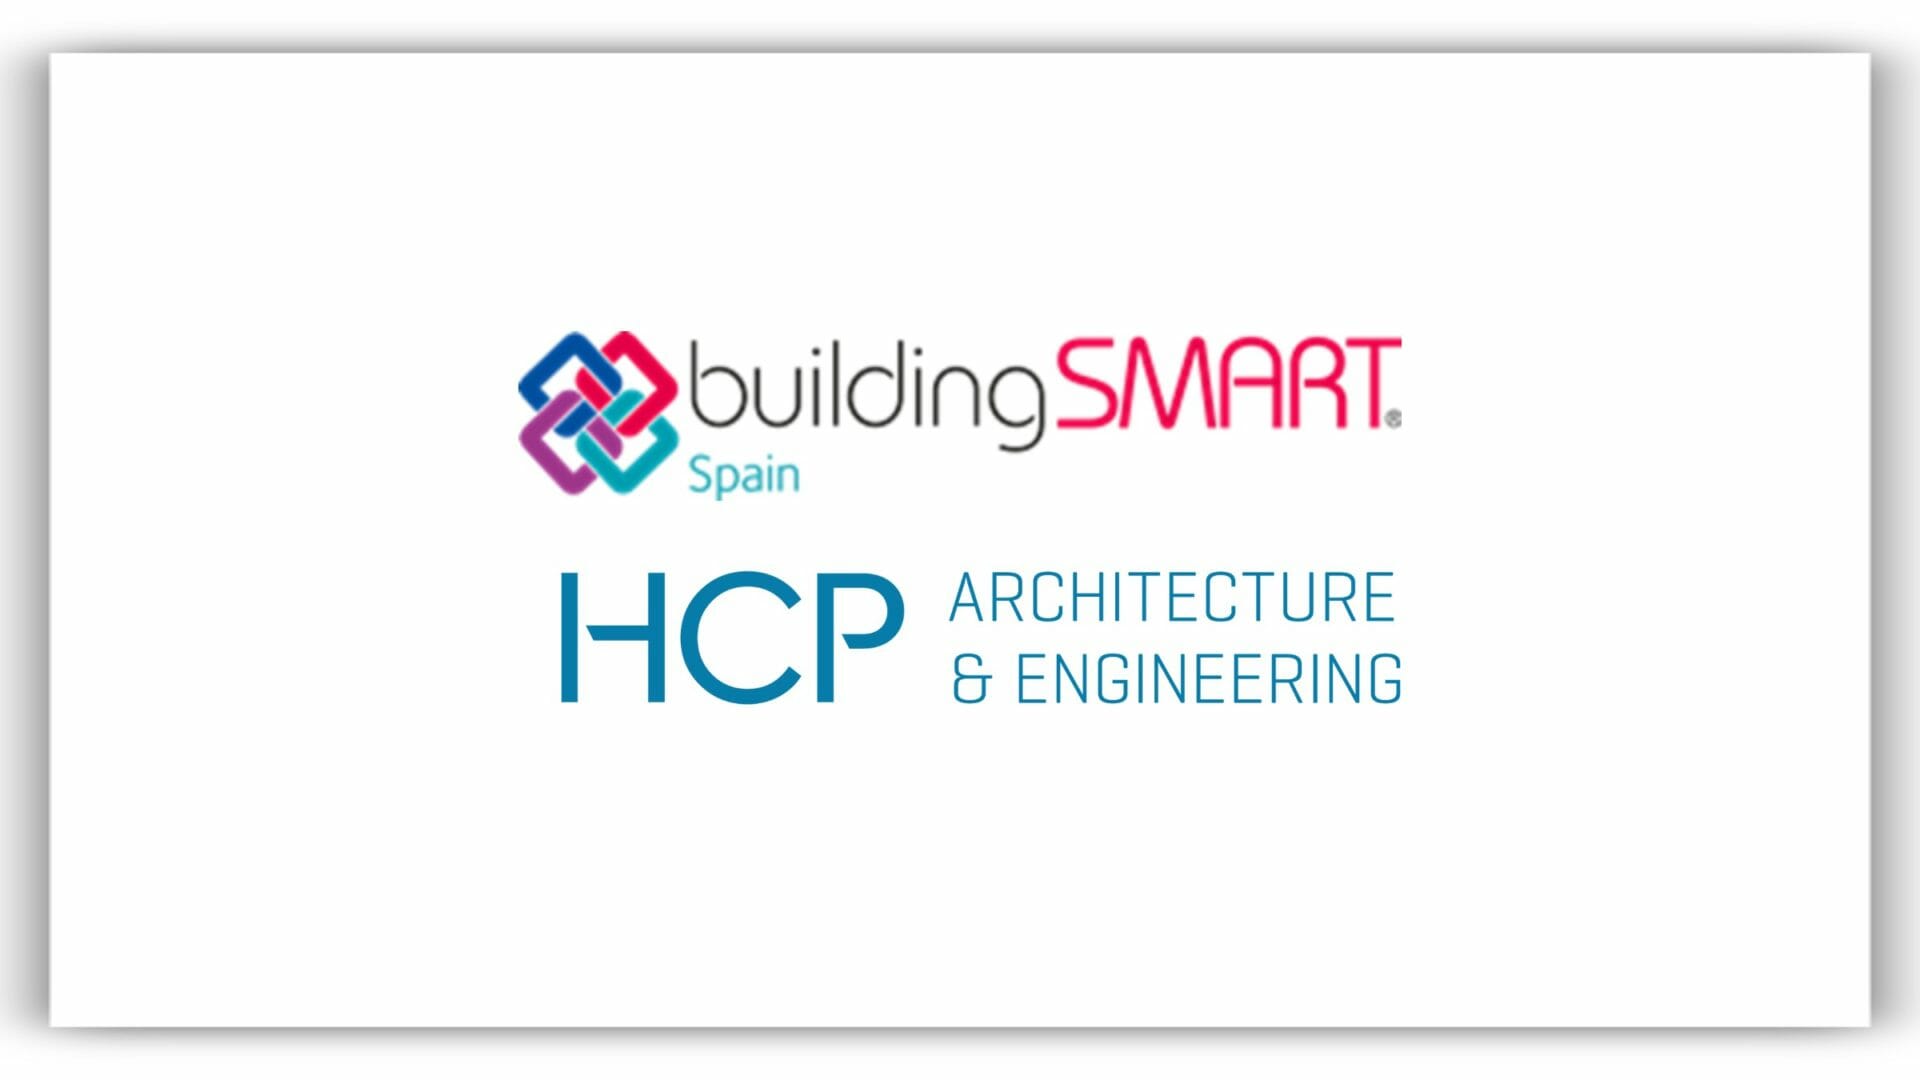 Building SMART Spain y HCP